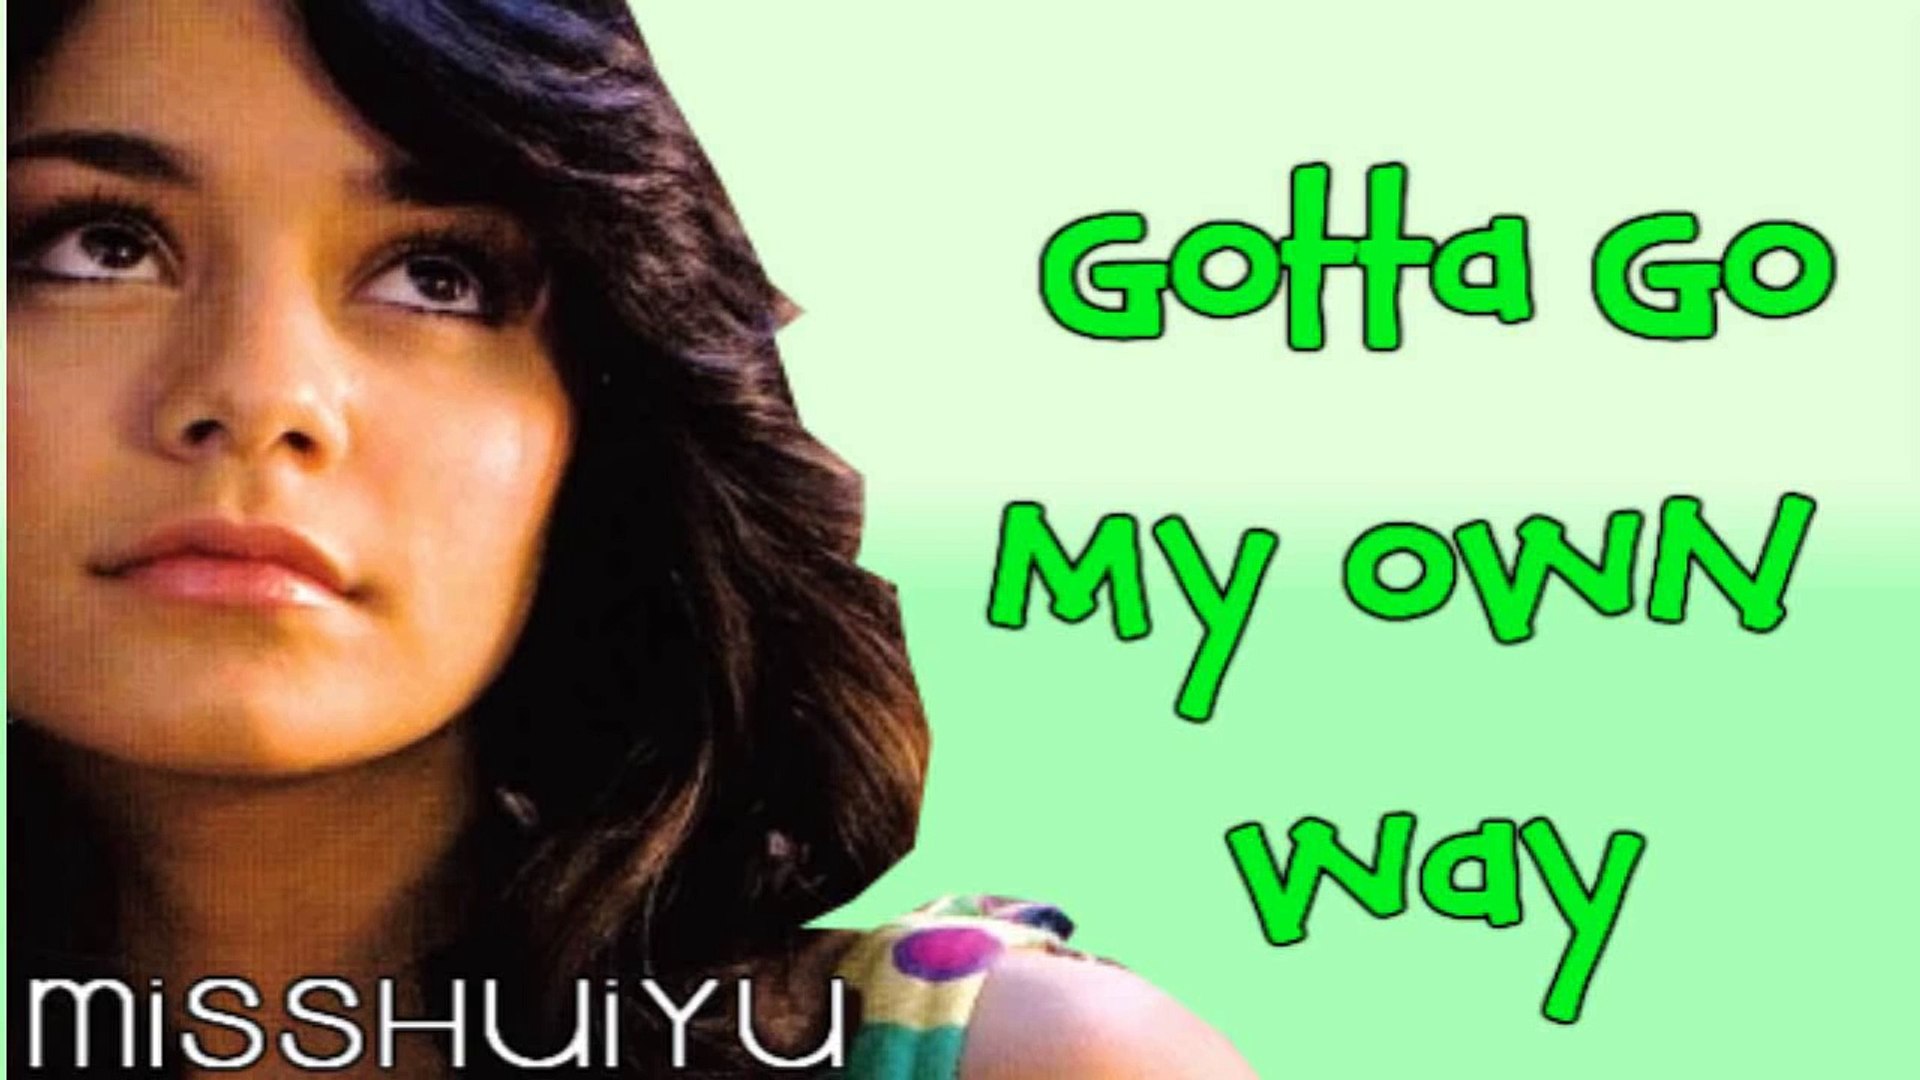 Vanessa Hudgens - Gotta go my own way (Lyrics+DL) - video Dailymotion